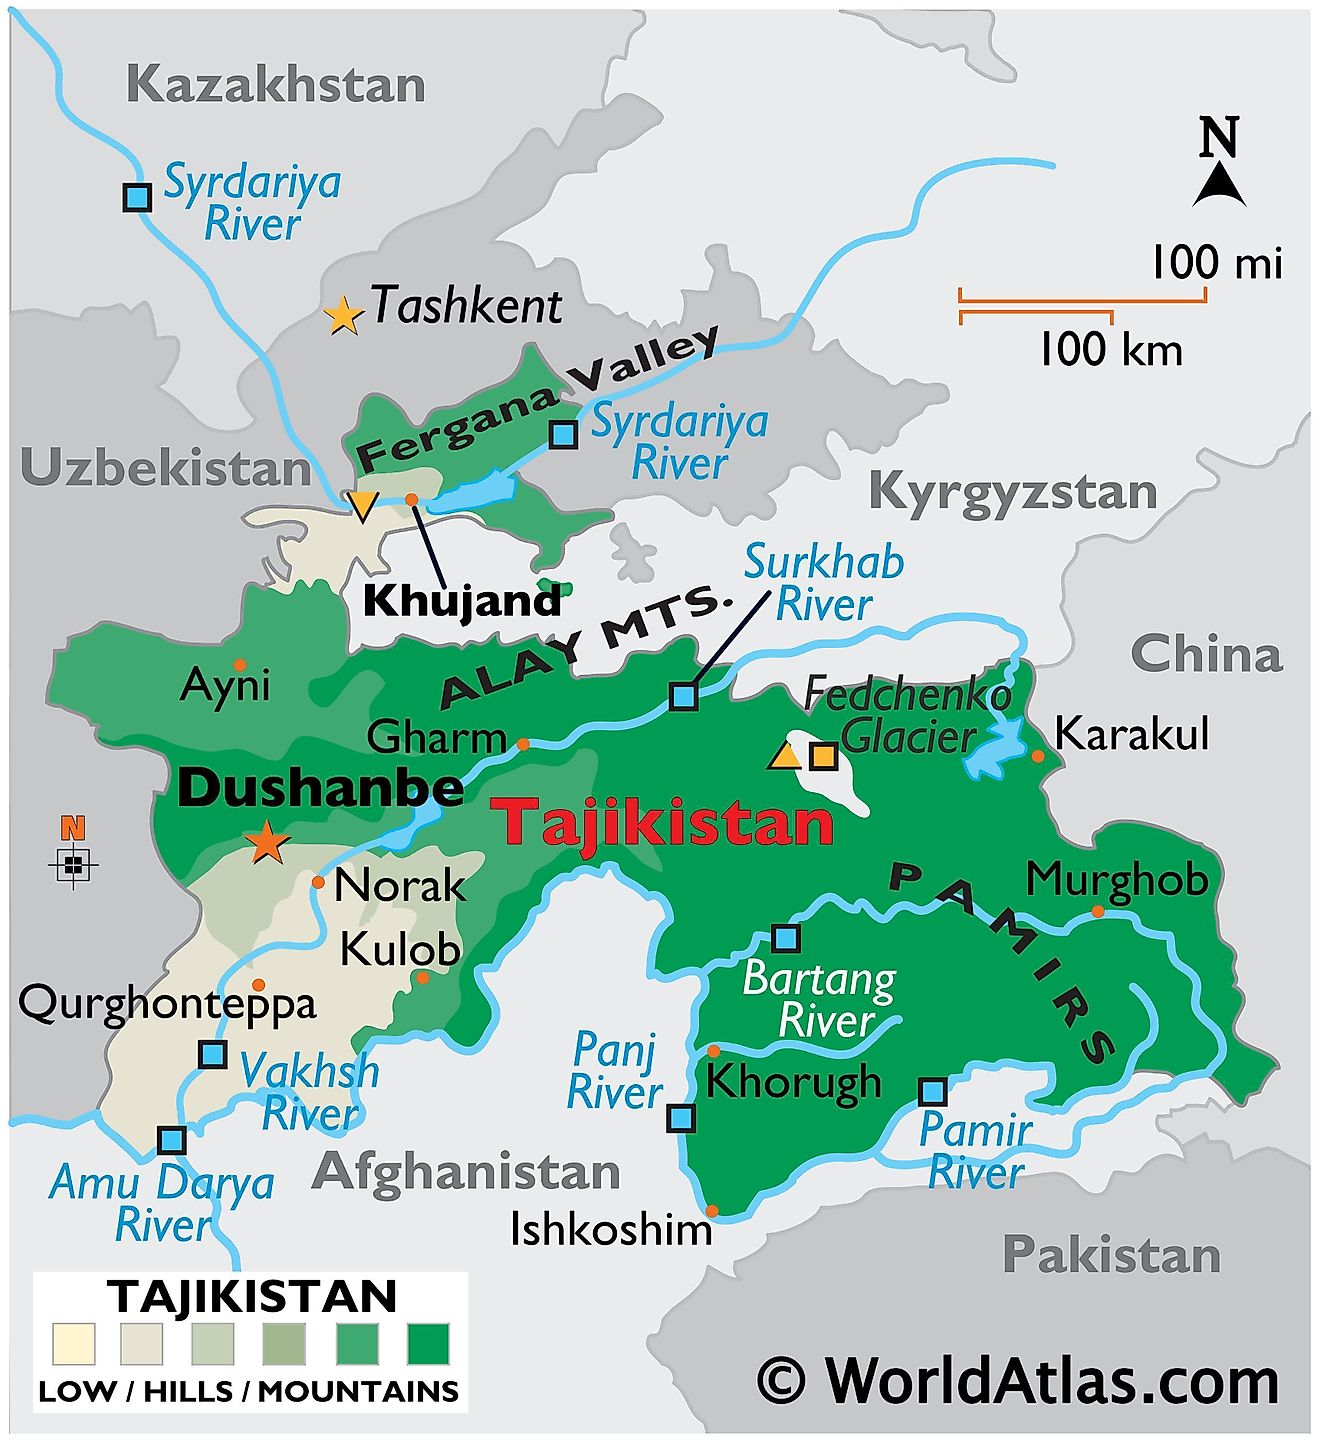 Mapa físico de Tayikistán con límites estatales, relieve, principales cadenas montañosas, ríos, glaciar Fedchenko, valle de Fergana, puntos extremos, etc.